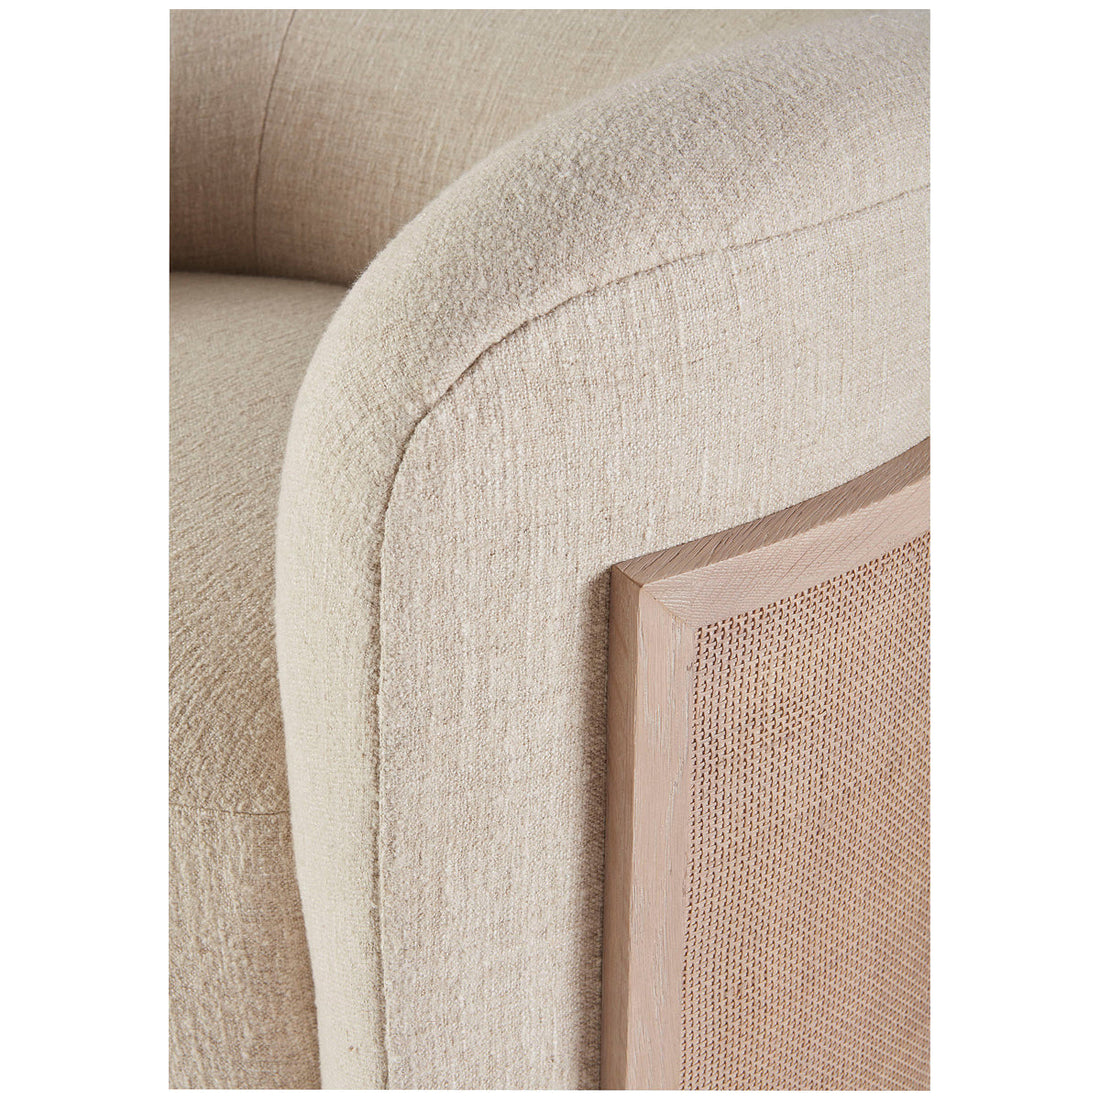 Baker Furniture Nami Lounge Chair MCA2605C